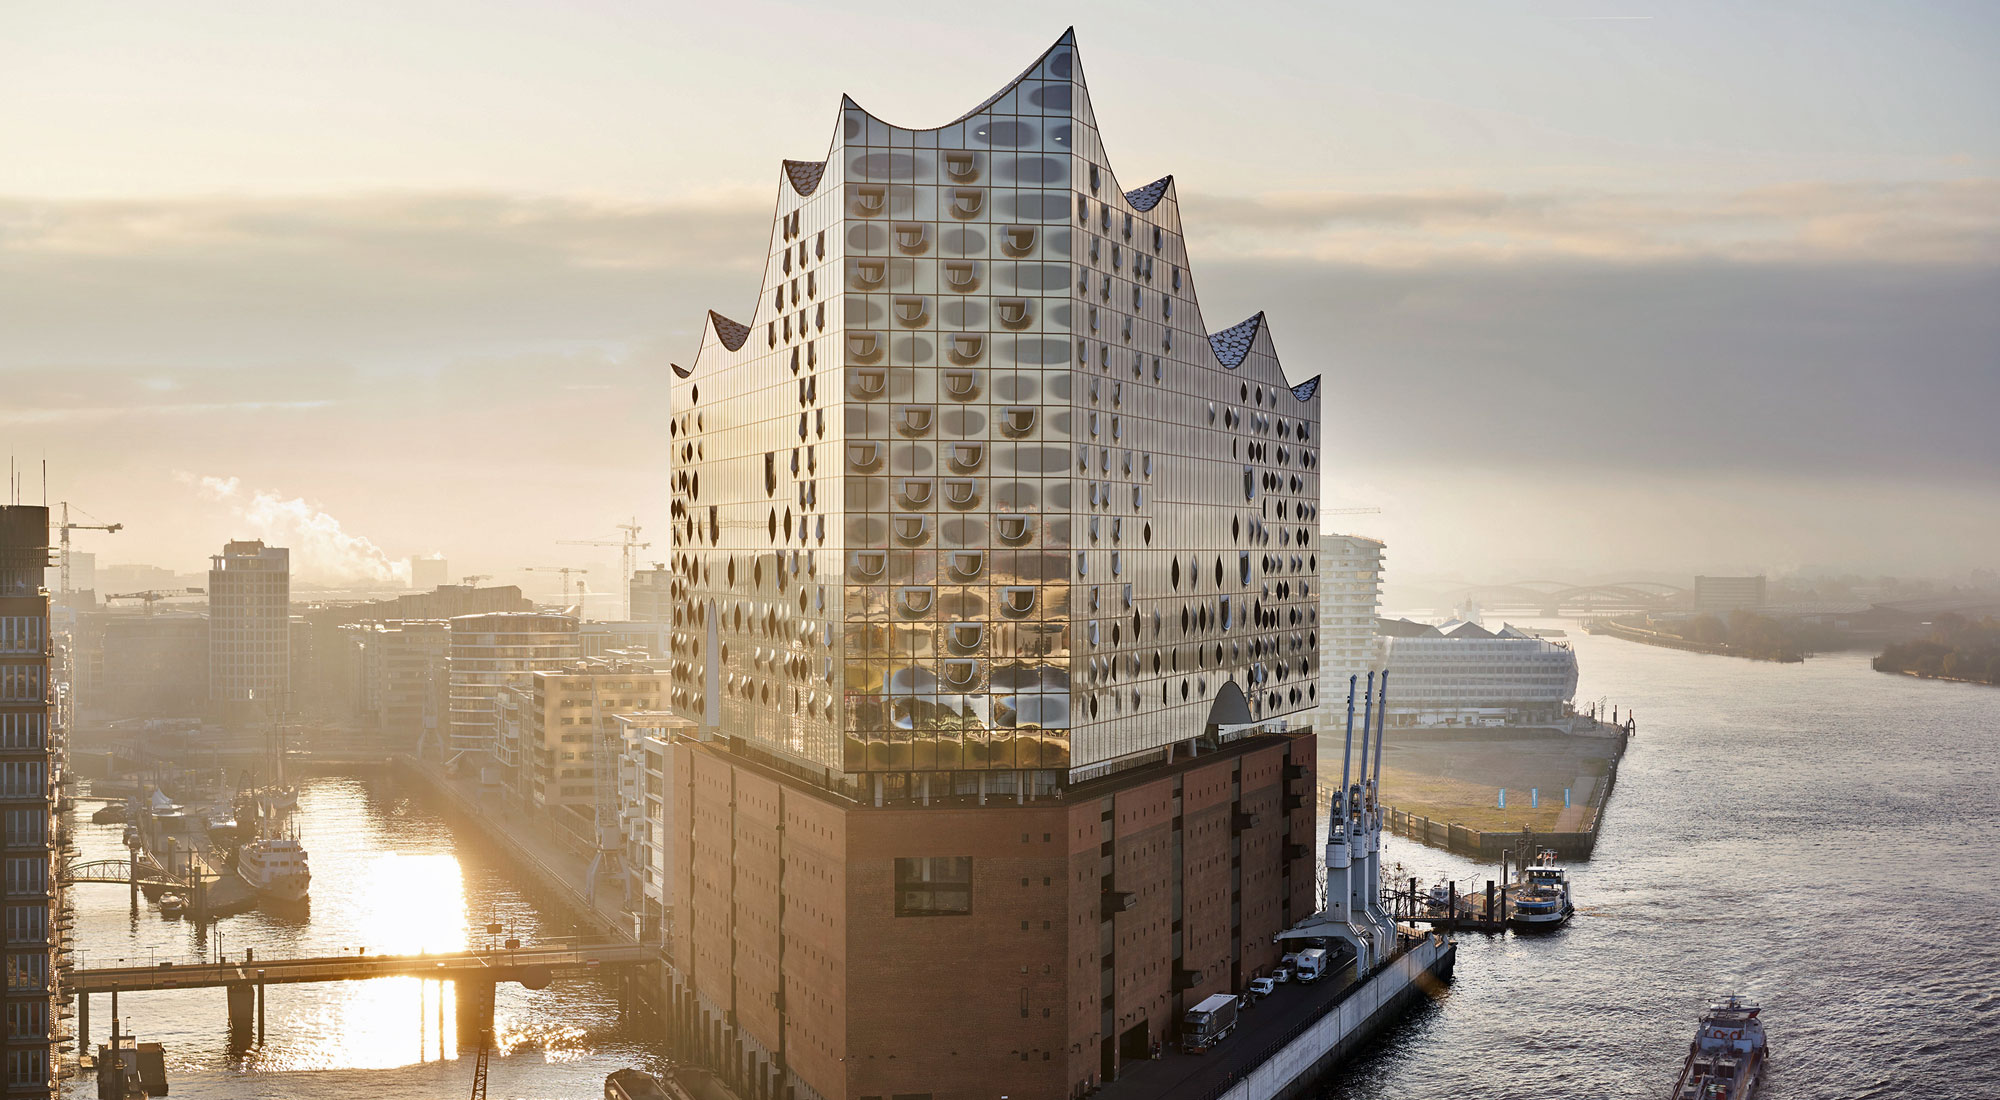 Hamburg - Harbour City and Elbphilharmonie